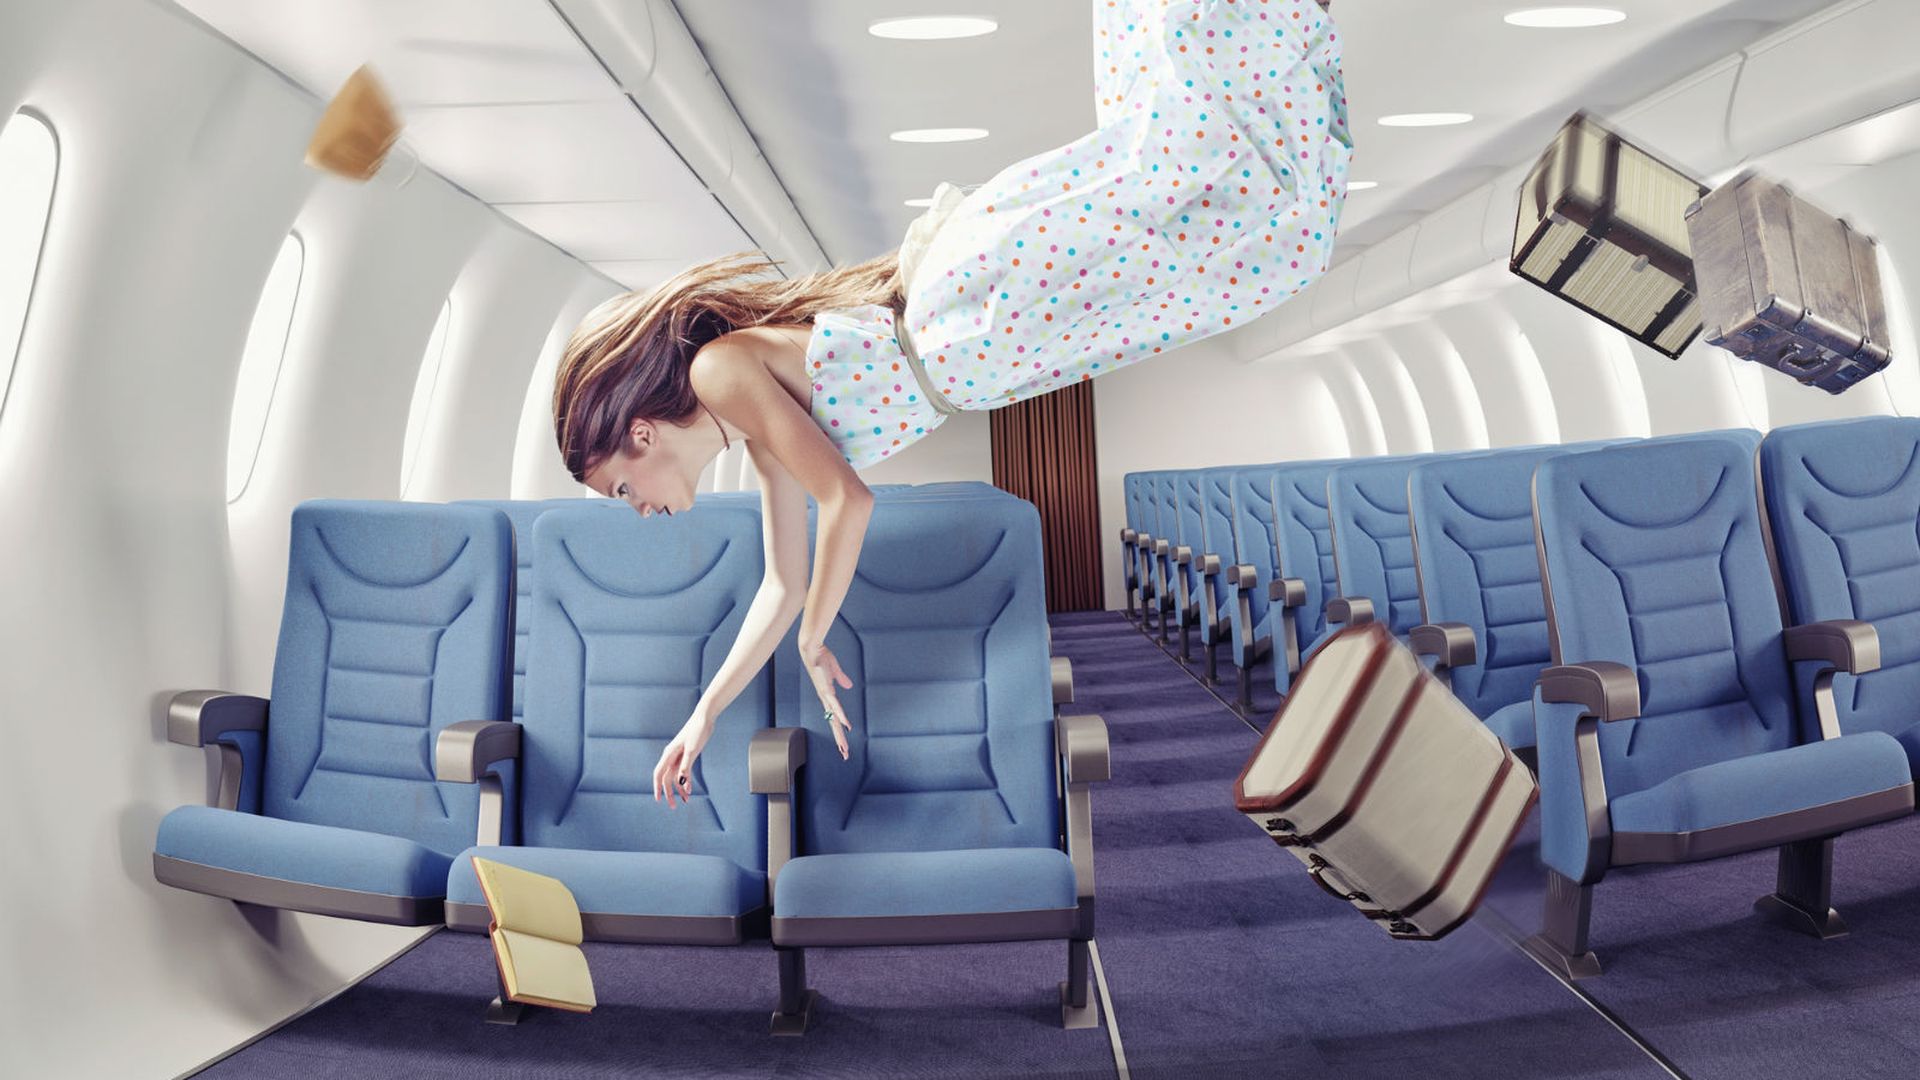 Три места свободны. Девушка в самолете. Девушка в самолете в невесомости. Самолет картинка. Пристегнутый человек в самолете.